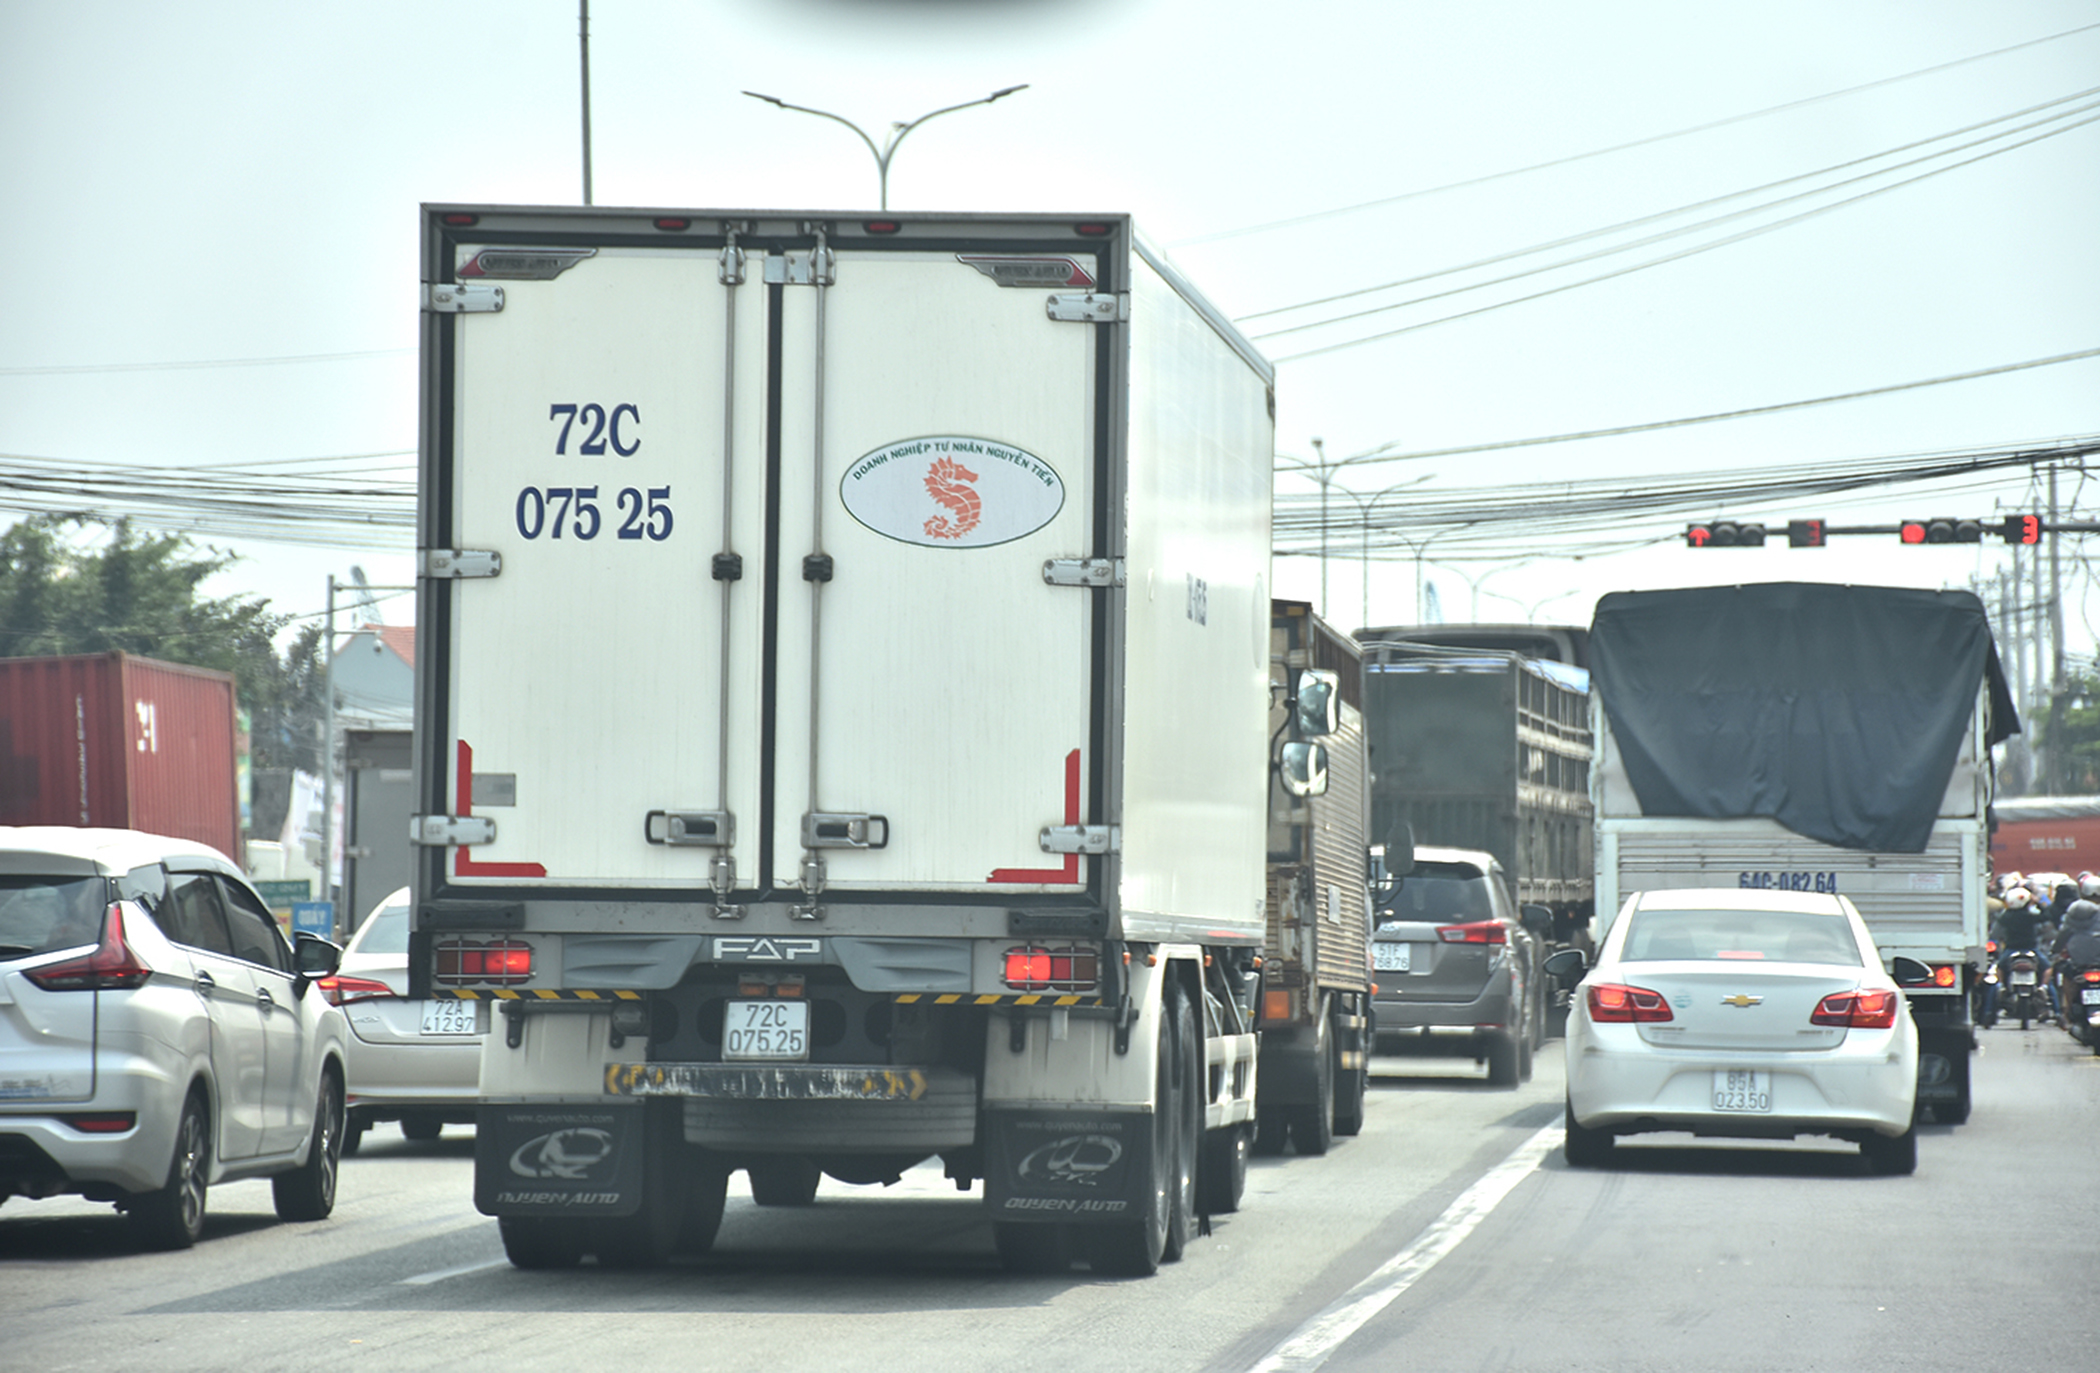 Sớm triển khai thực hiện tuyến cao tốc Biên Hòa – Vũng Tàu sẽ giảm tải cho Quốc lộ 51 hiện đang quá tải. Trong ảnh: Quốc lộ 51 hiện đang quá tải, mật độ lưu thông của phương tiện khá cao.